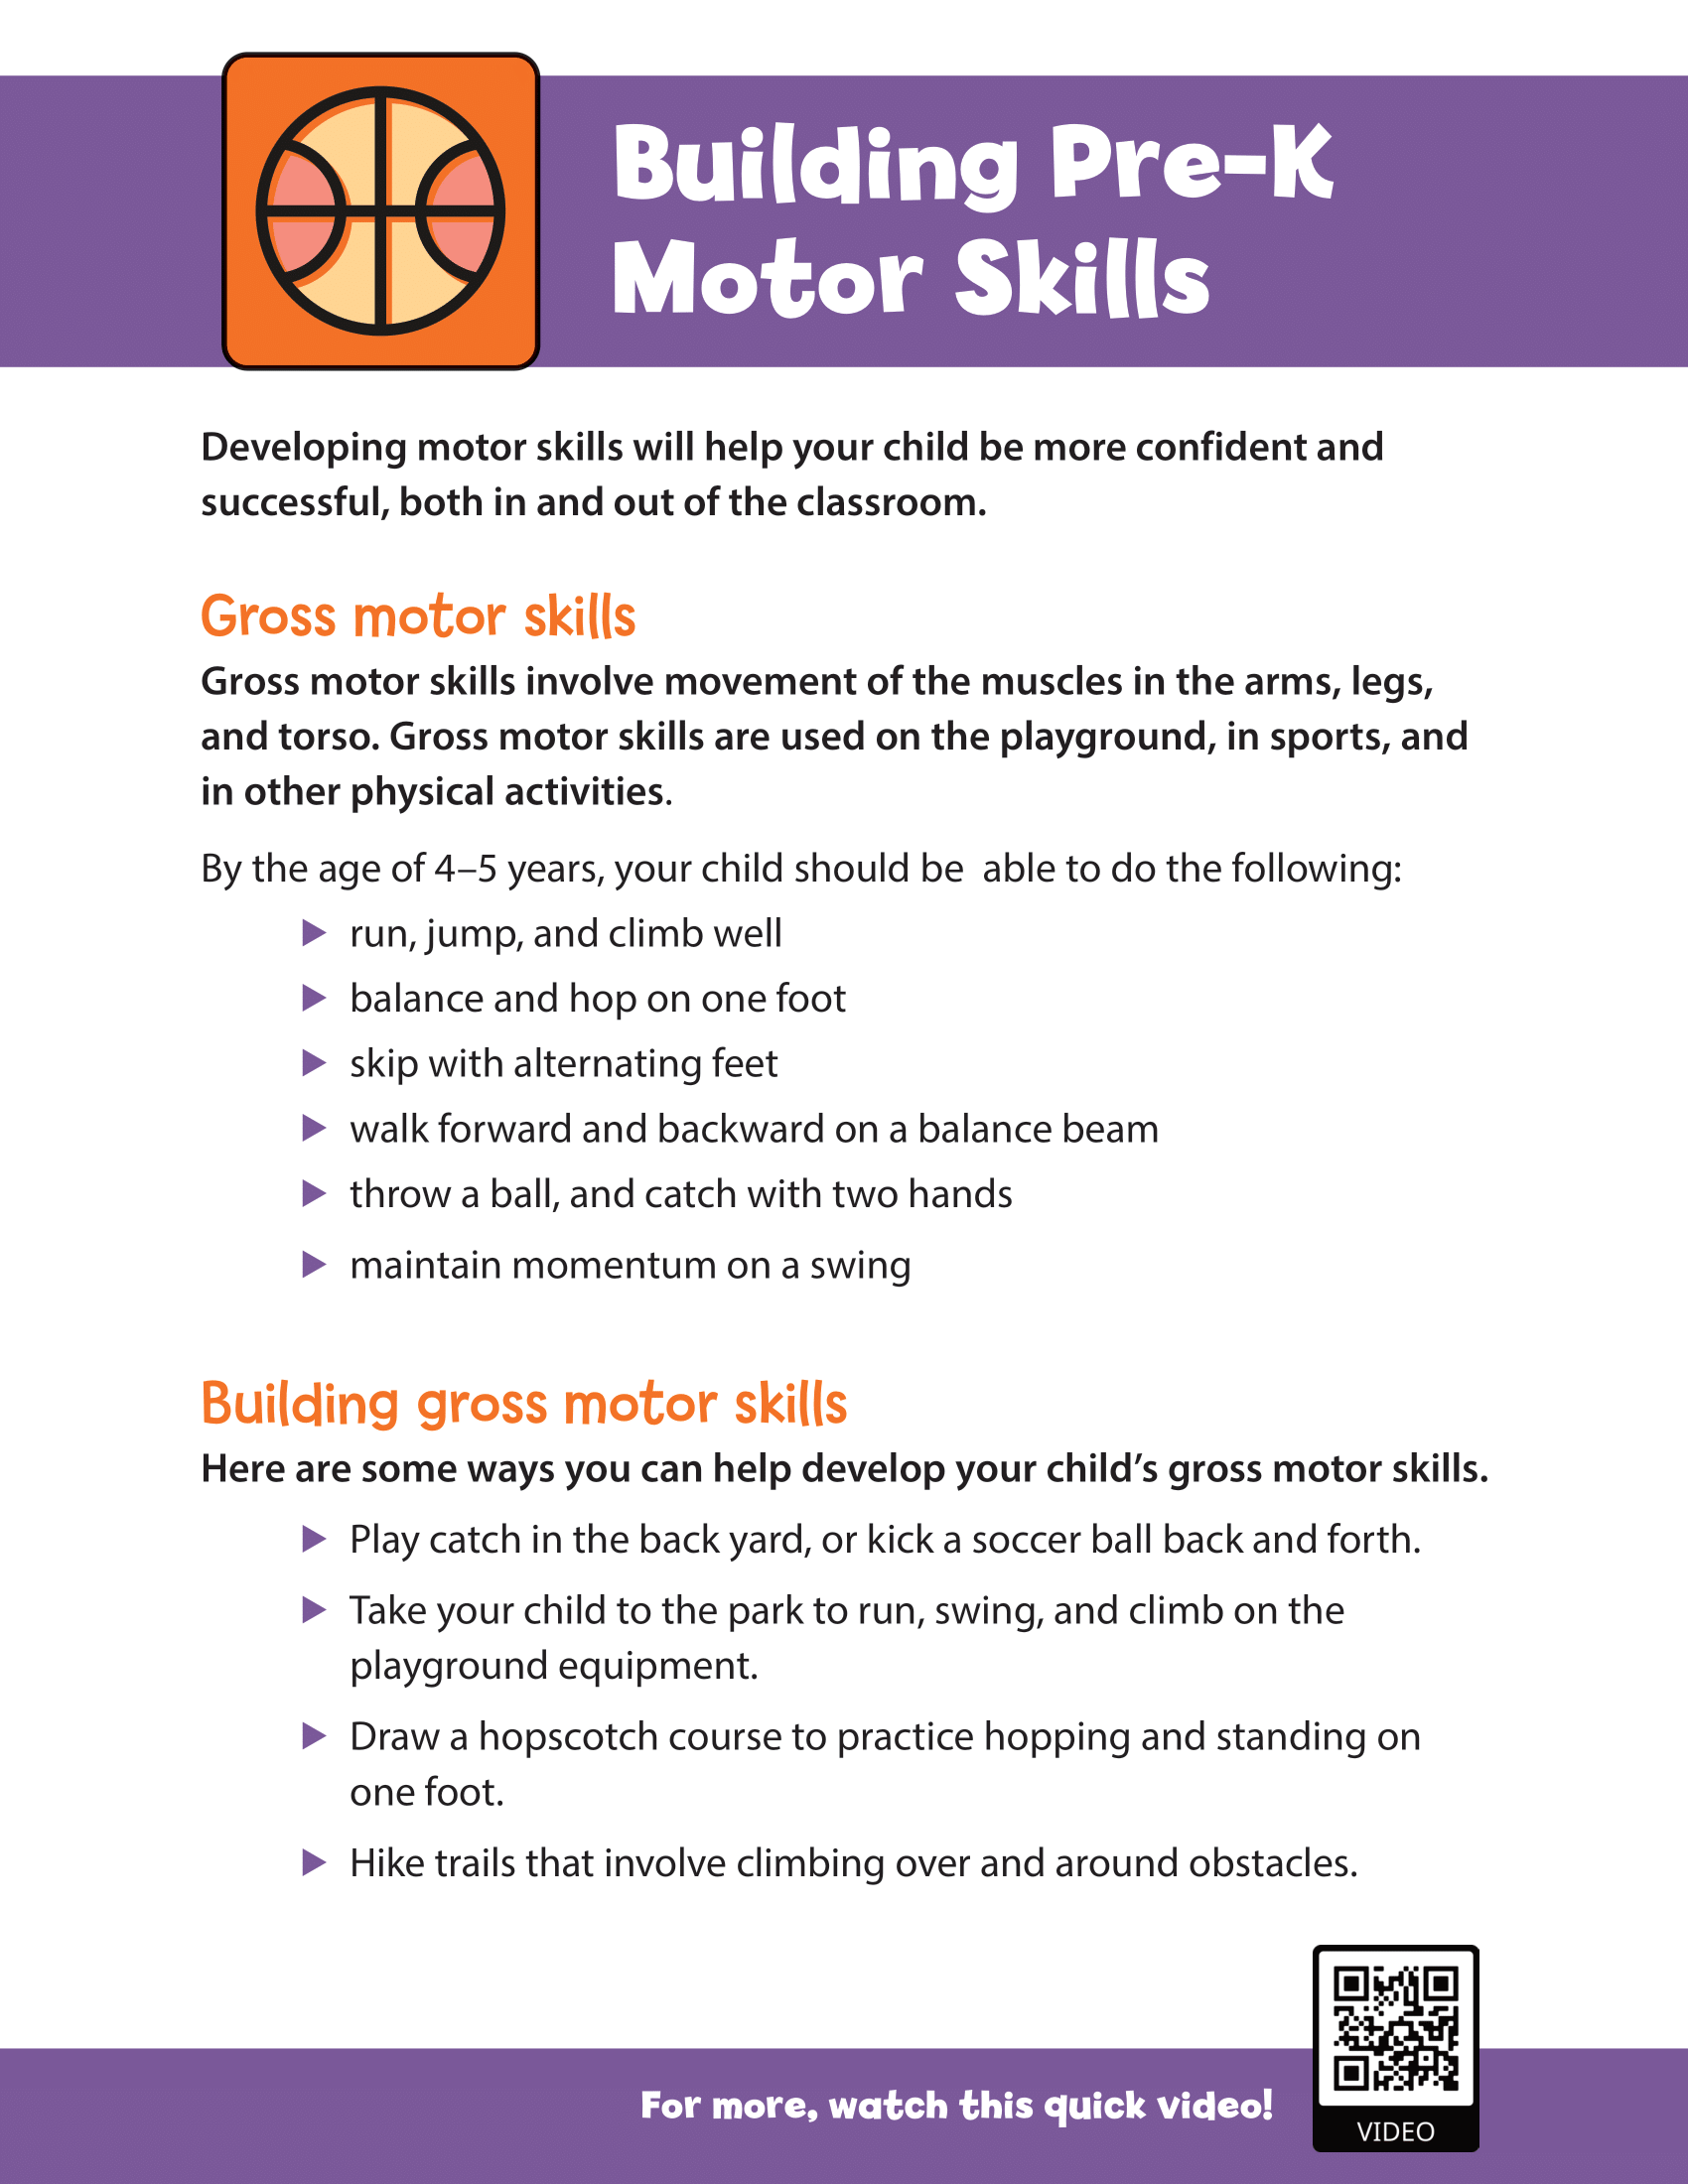 Building Pre-K Motor Skills